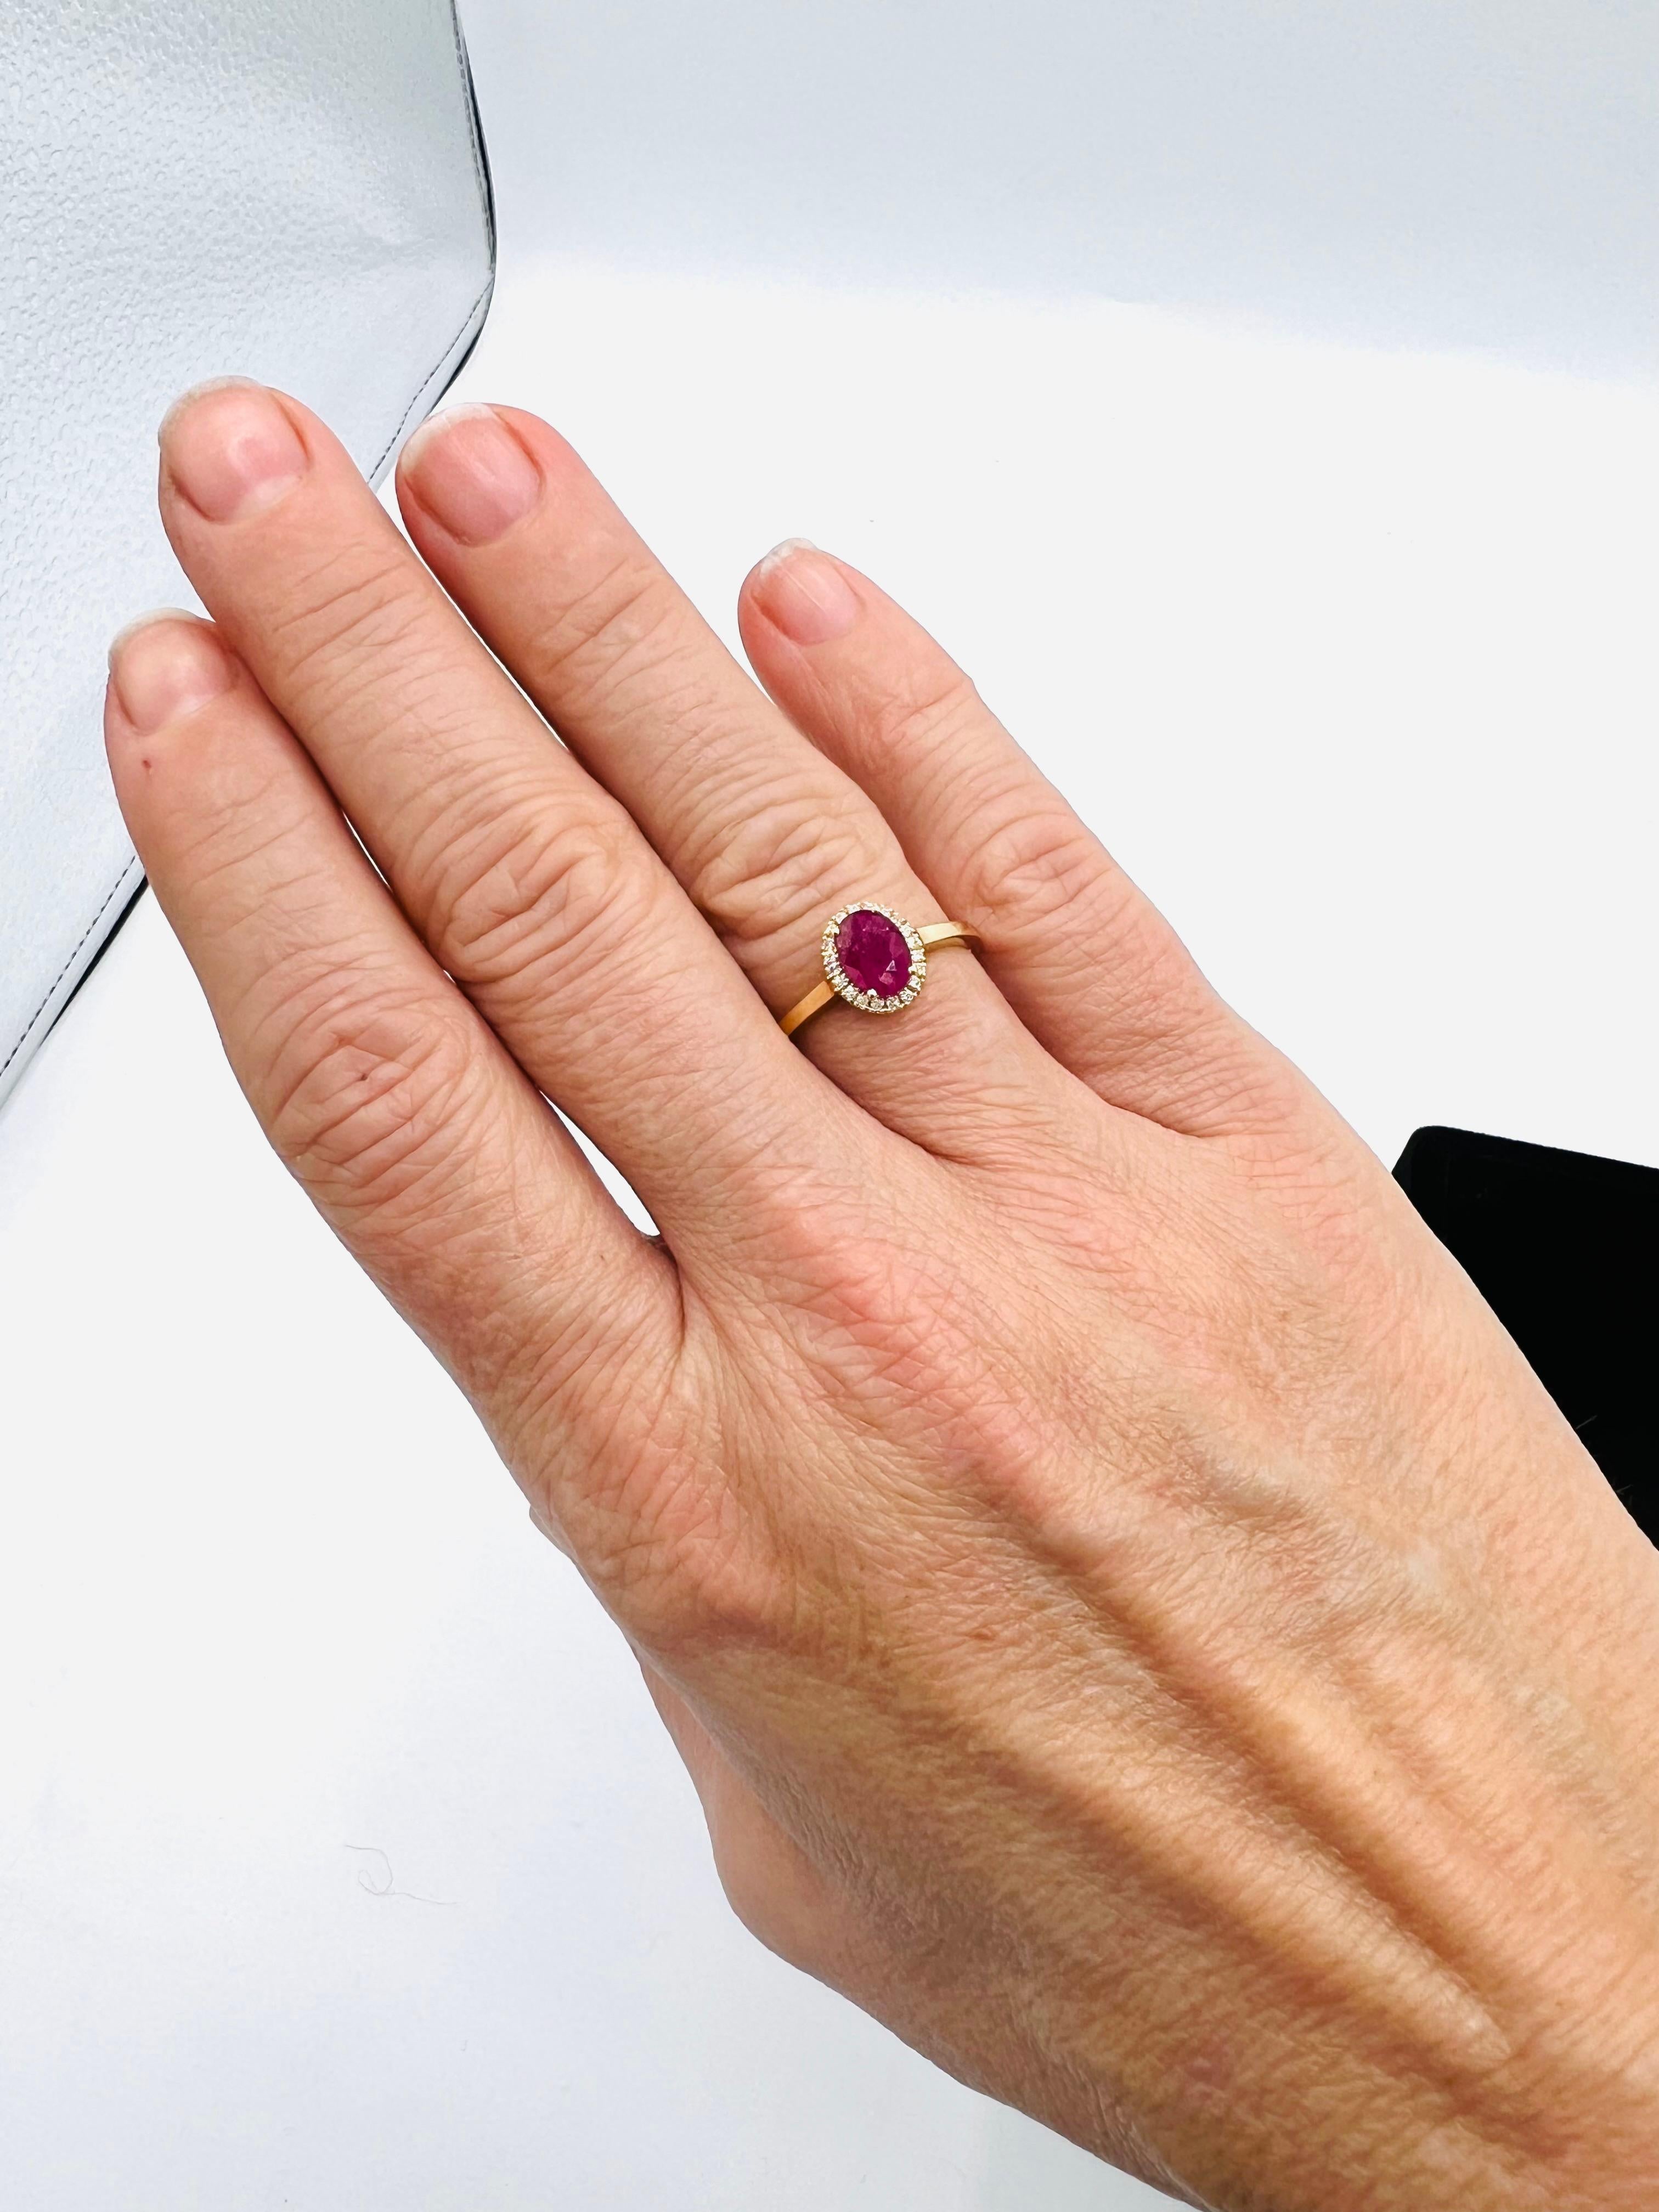 Verlobungsring, besetzt mit einem ovalen, facettierten Rubin (7 mm x 5 mm), umgeben von einem Brillantpavé,
sehr hübscher Verlobungsring, raffiniert, in der Mitte mit einem Rubin von ca. 1 Karat besetzt, umgeben von einem Pavé aus Brillanten von